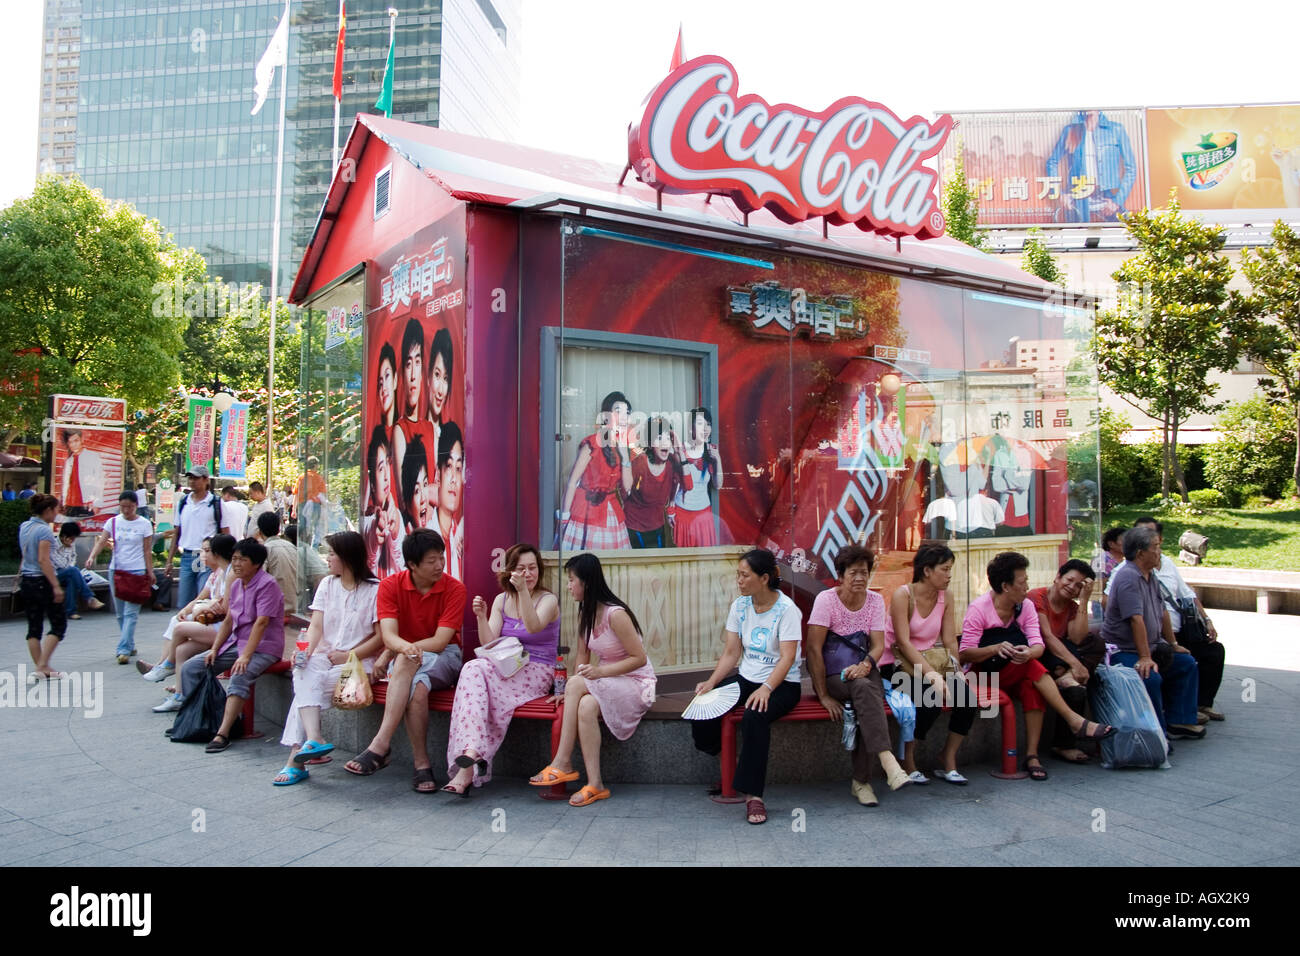 Lavoratori sedersi all'ombra a ora di pranzo nella parte anteriore della Coca Cola pubblicità a Shanghai il popolare Xiang Yang il mercato della moda Foto Stock